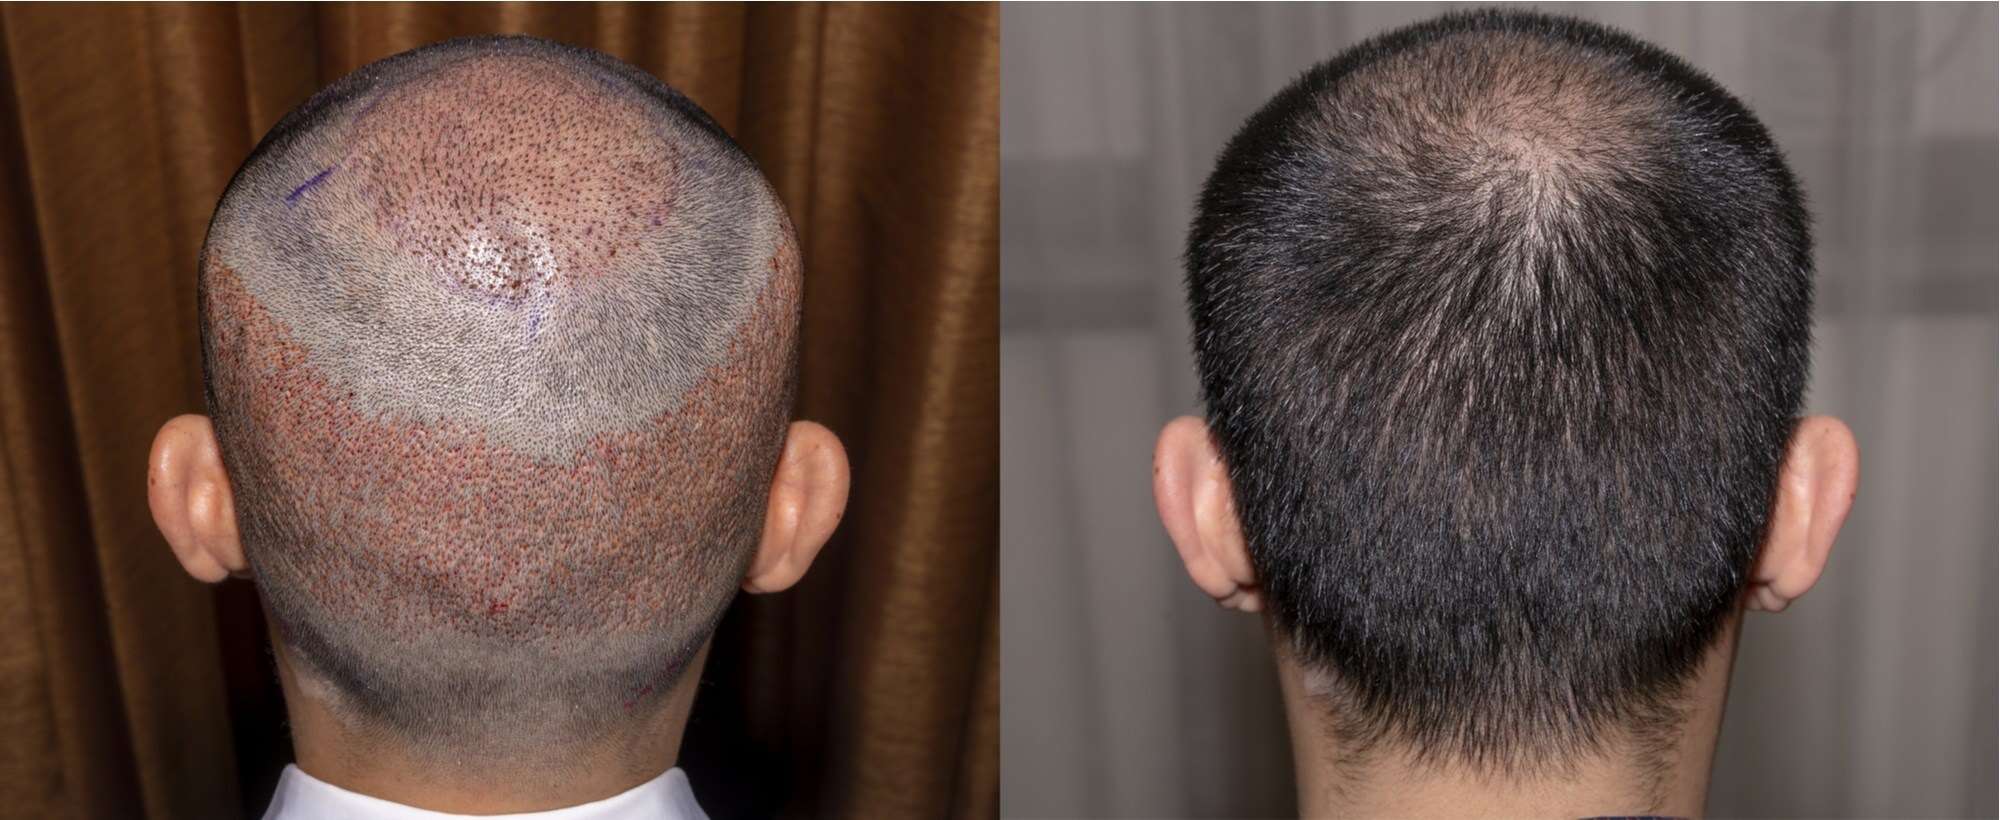 الفرق بين زراعة الشعر في تركيا وقطر